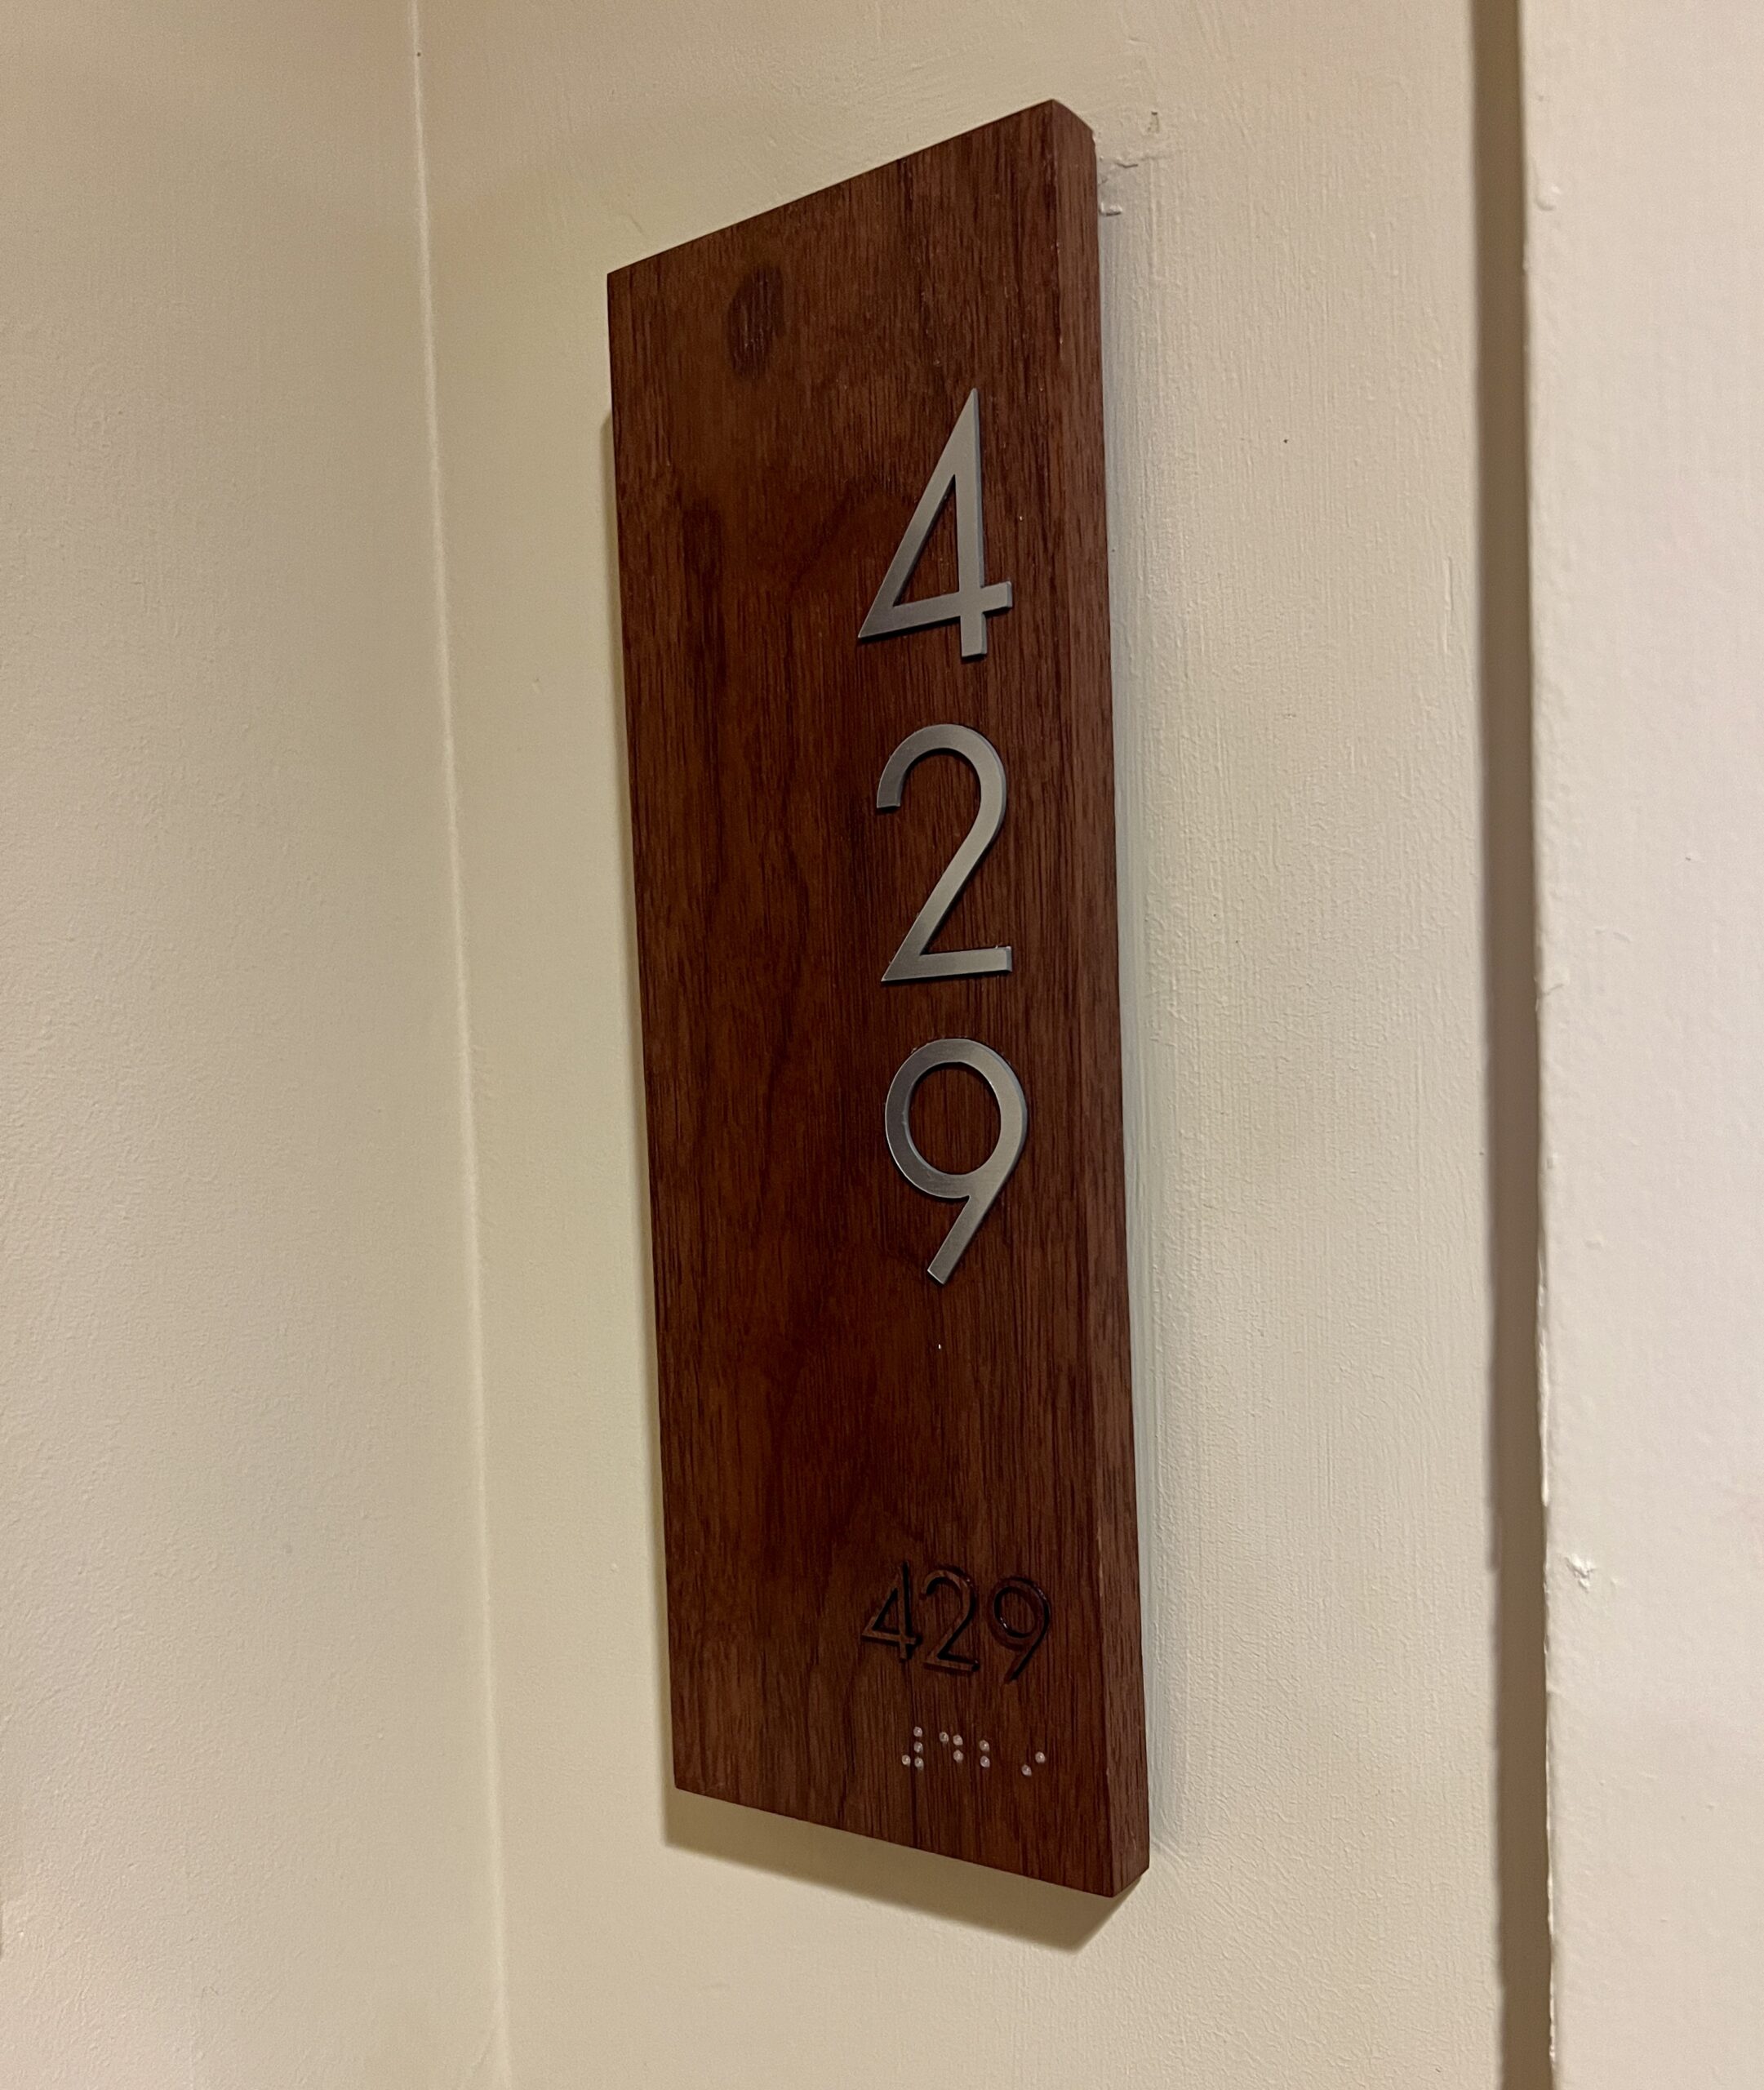 Room 429